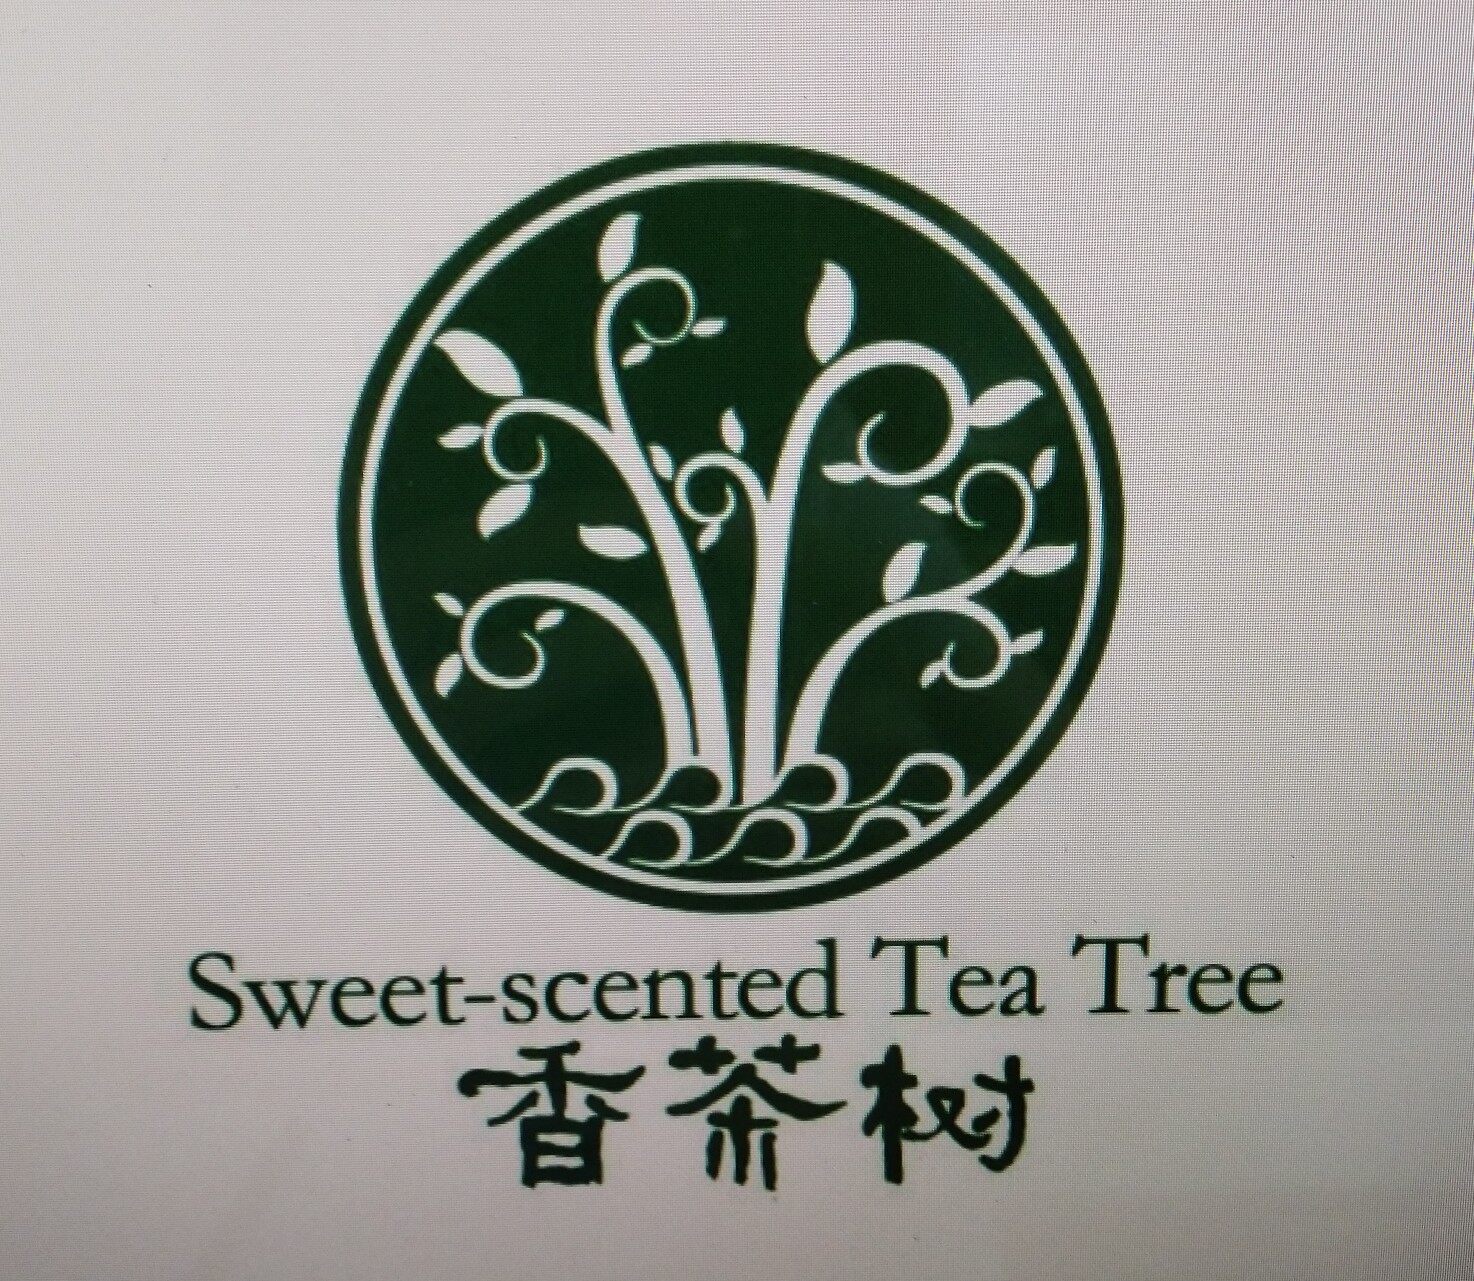 深圳市香茶树国际茶业有限公司logo